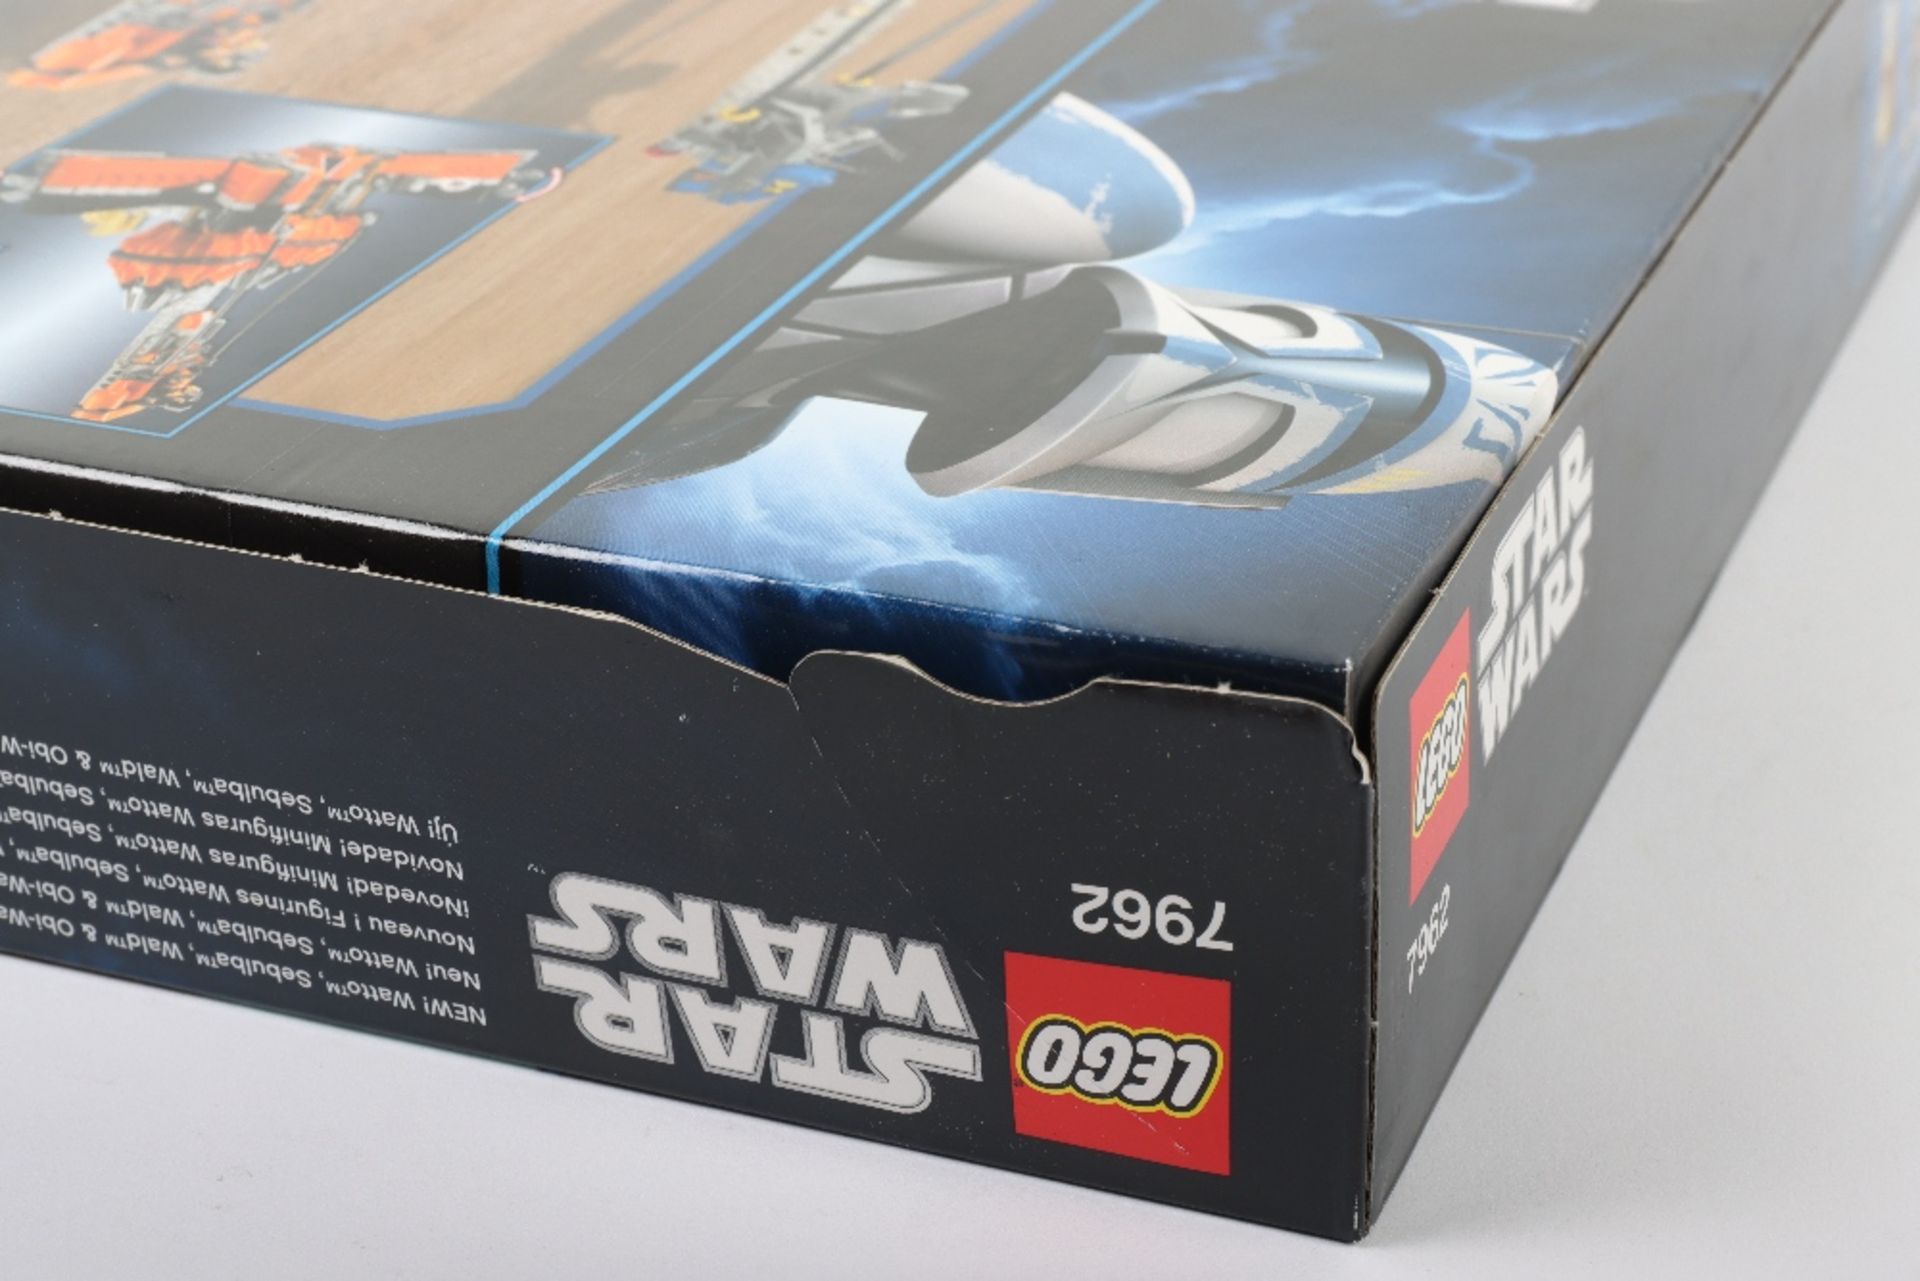 Lego Star Wars 7962 Anakin’s & Sebulba’s Podracers sealed boxed set - Image 7 of 7